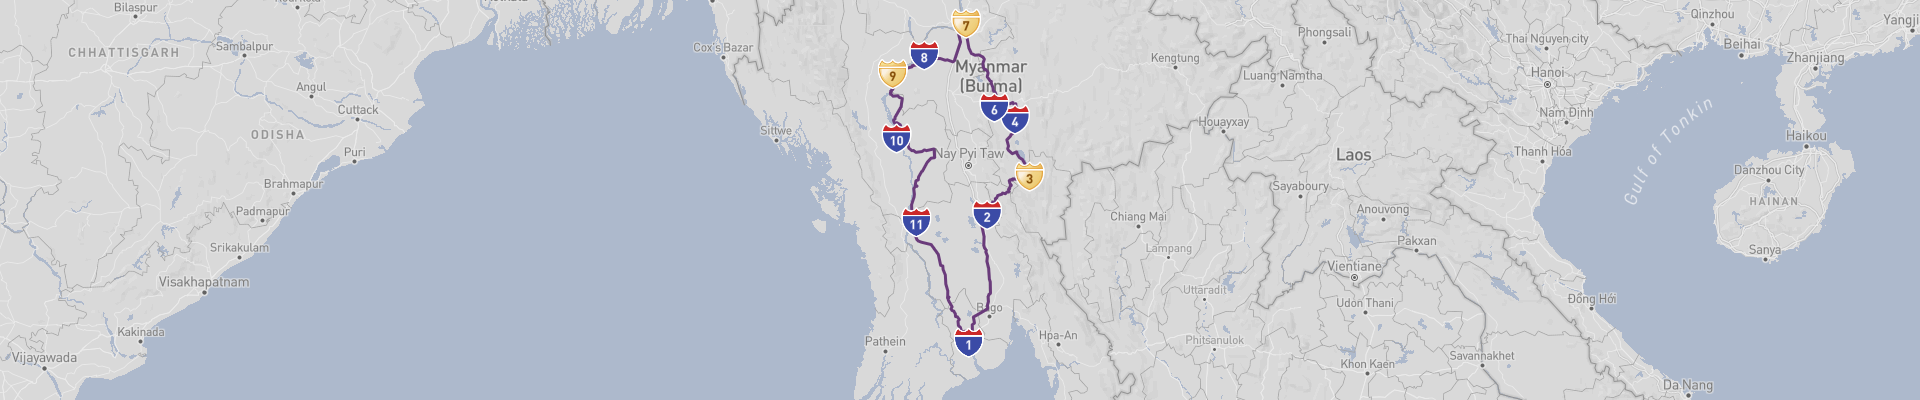 Itinéraire Myanmar 